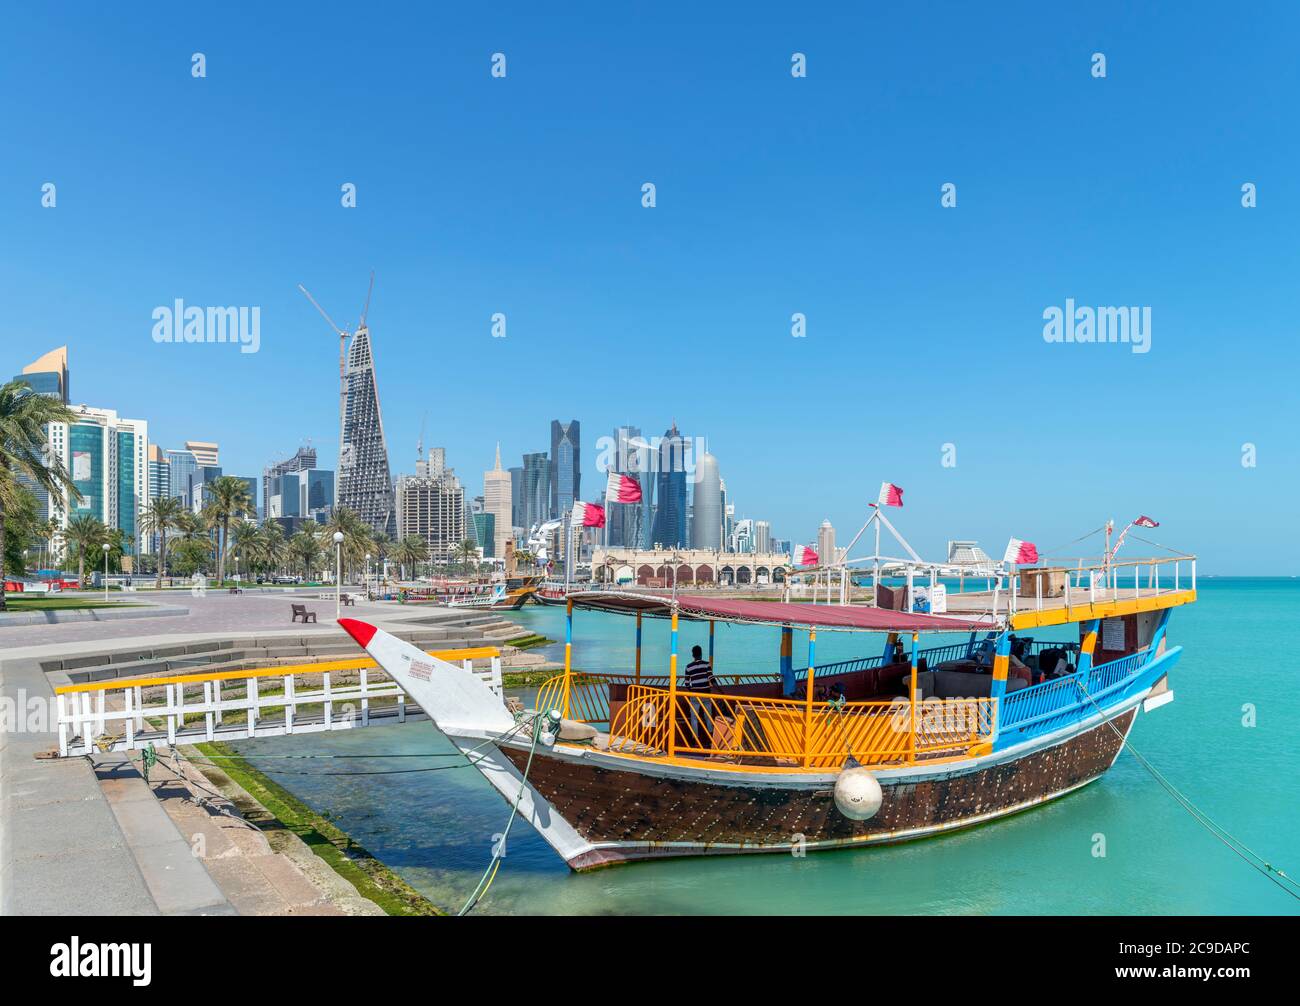 El horizonte del distrito central de negocios de West Bay desde Corniche, Doha, Qatar, Oriente Medio Foto de stock